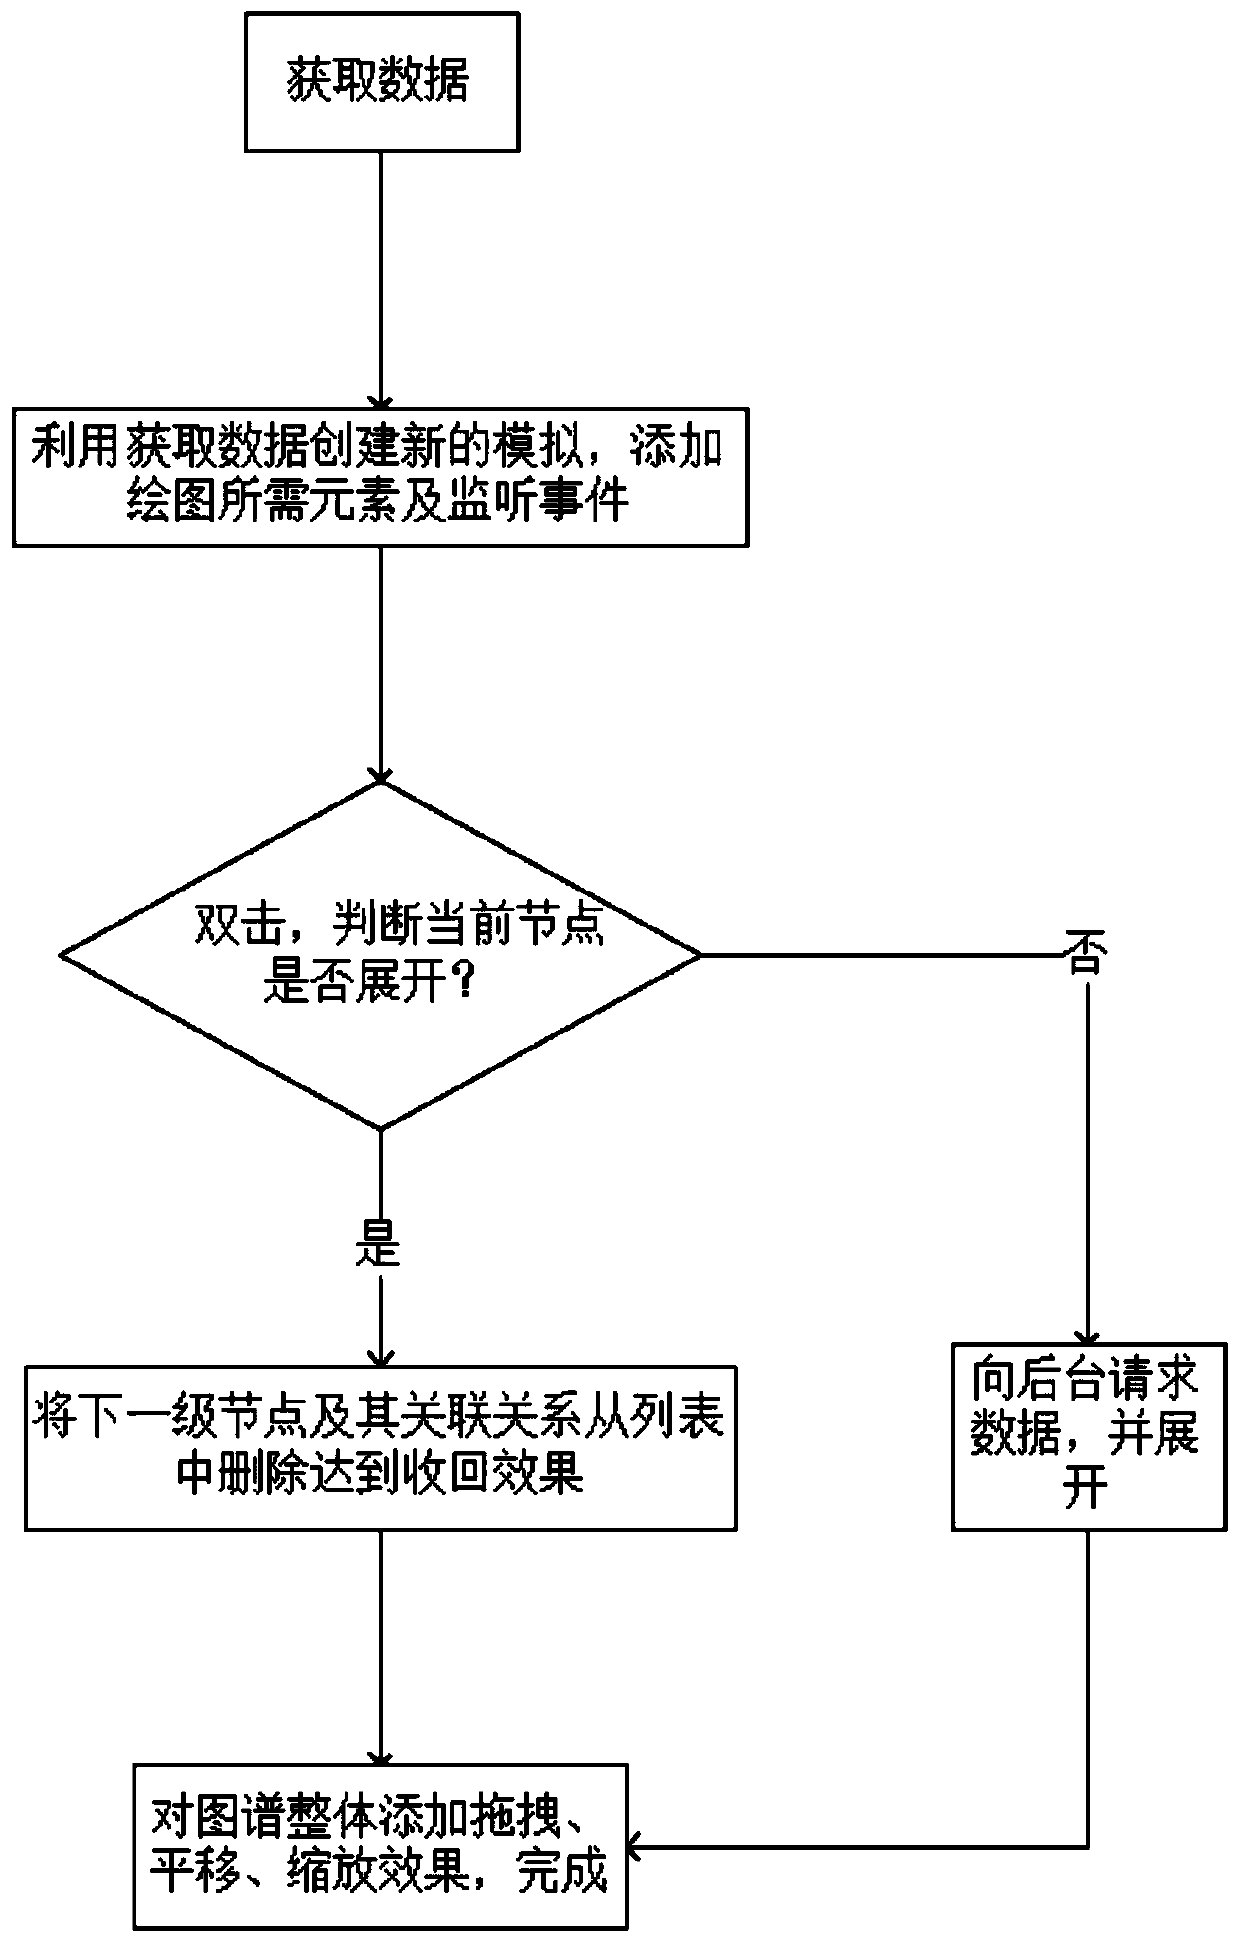 Method for displaying enterprise association relationship graph based on d3